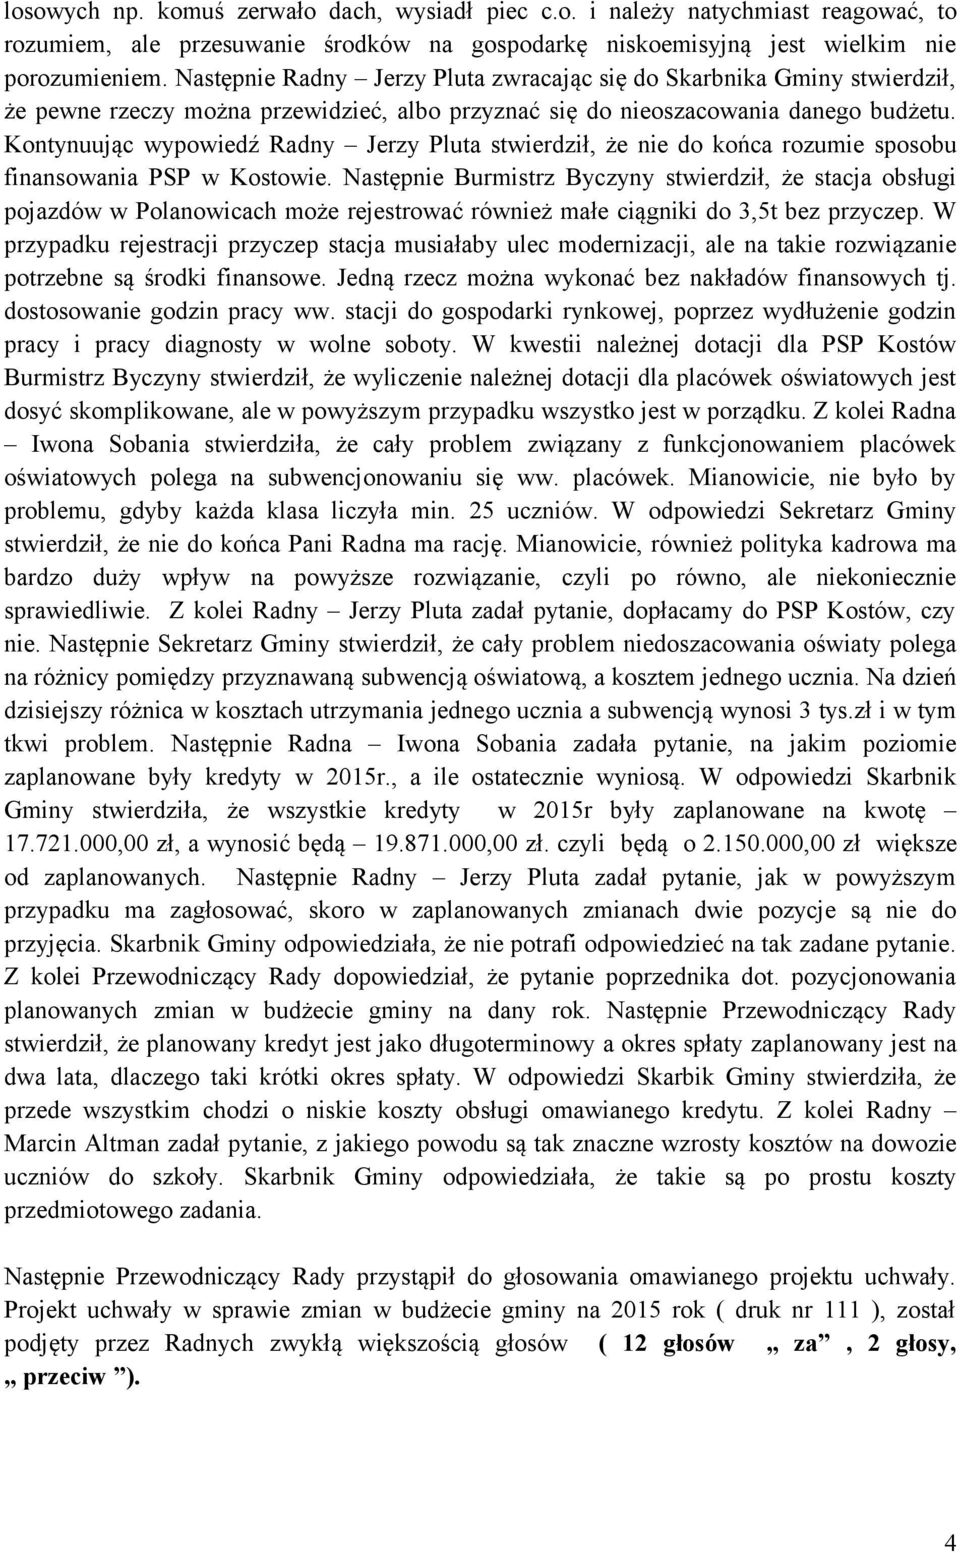 Kontynuując wypowiedź Radny Jerzy Pluta stwierdził, że nie do końca rozumie sposobu finansowania PSP w Kostowie.